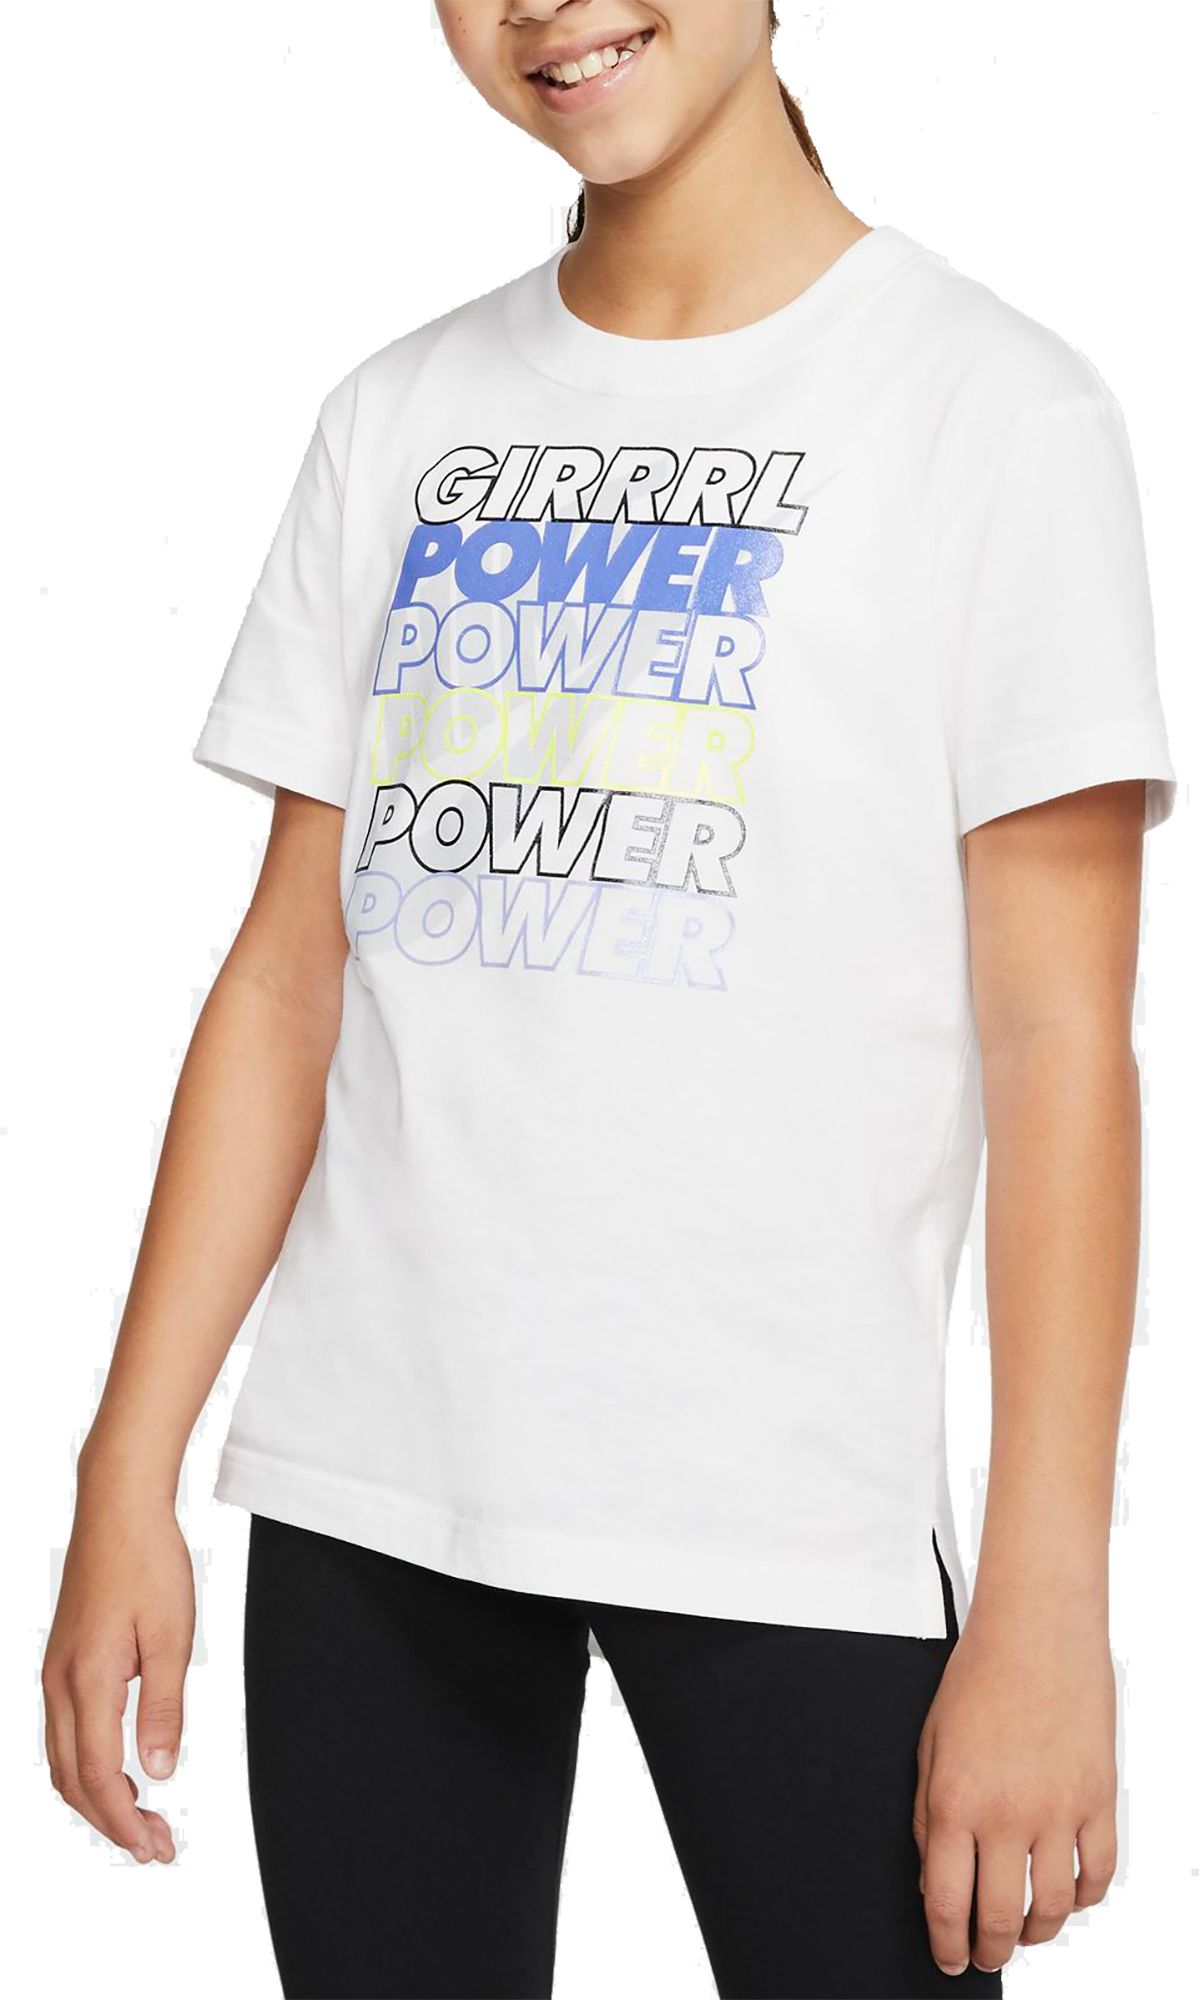 girl power nike